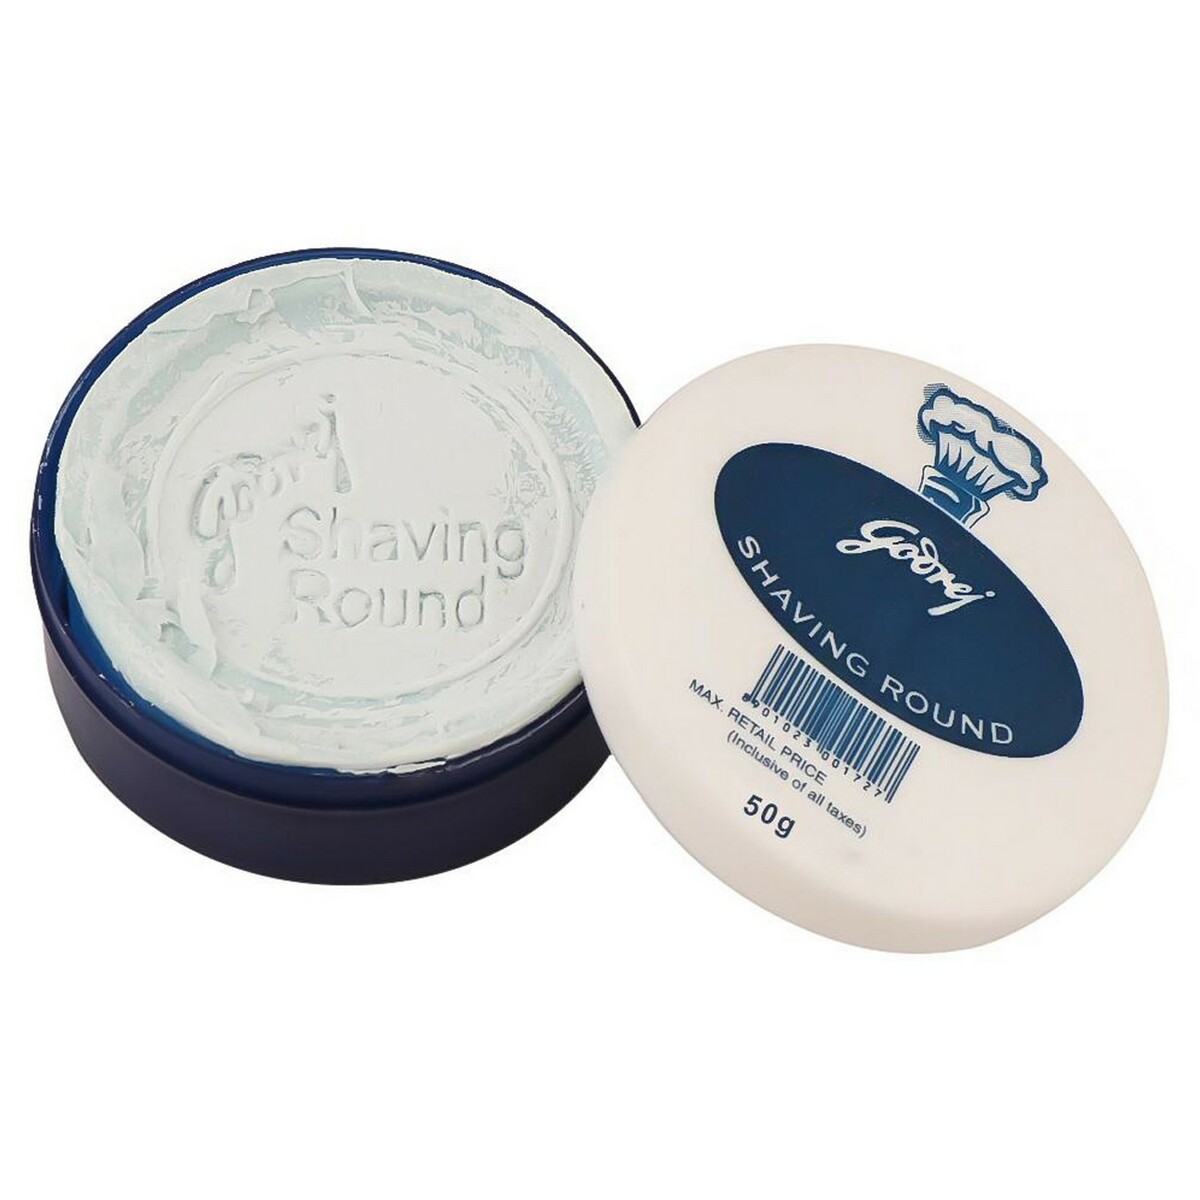 Godrej Shaving Cream Round Poly 50g